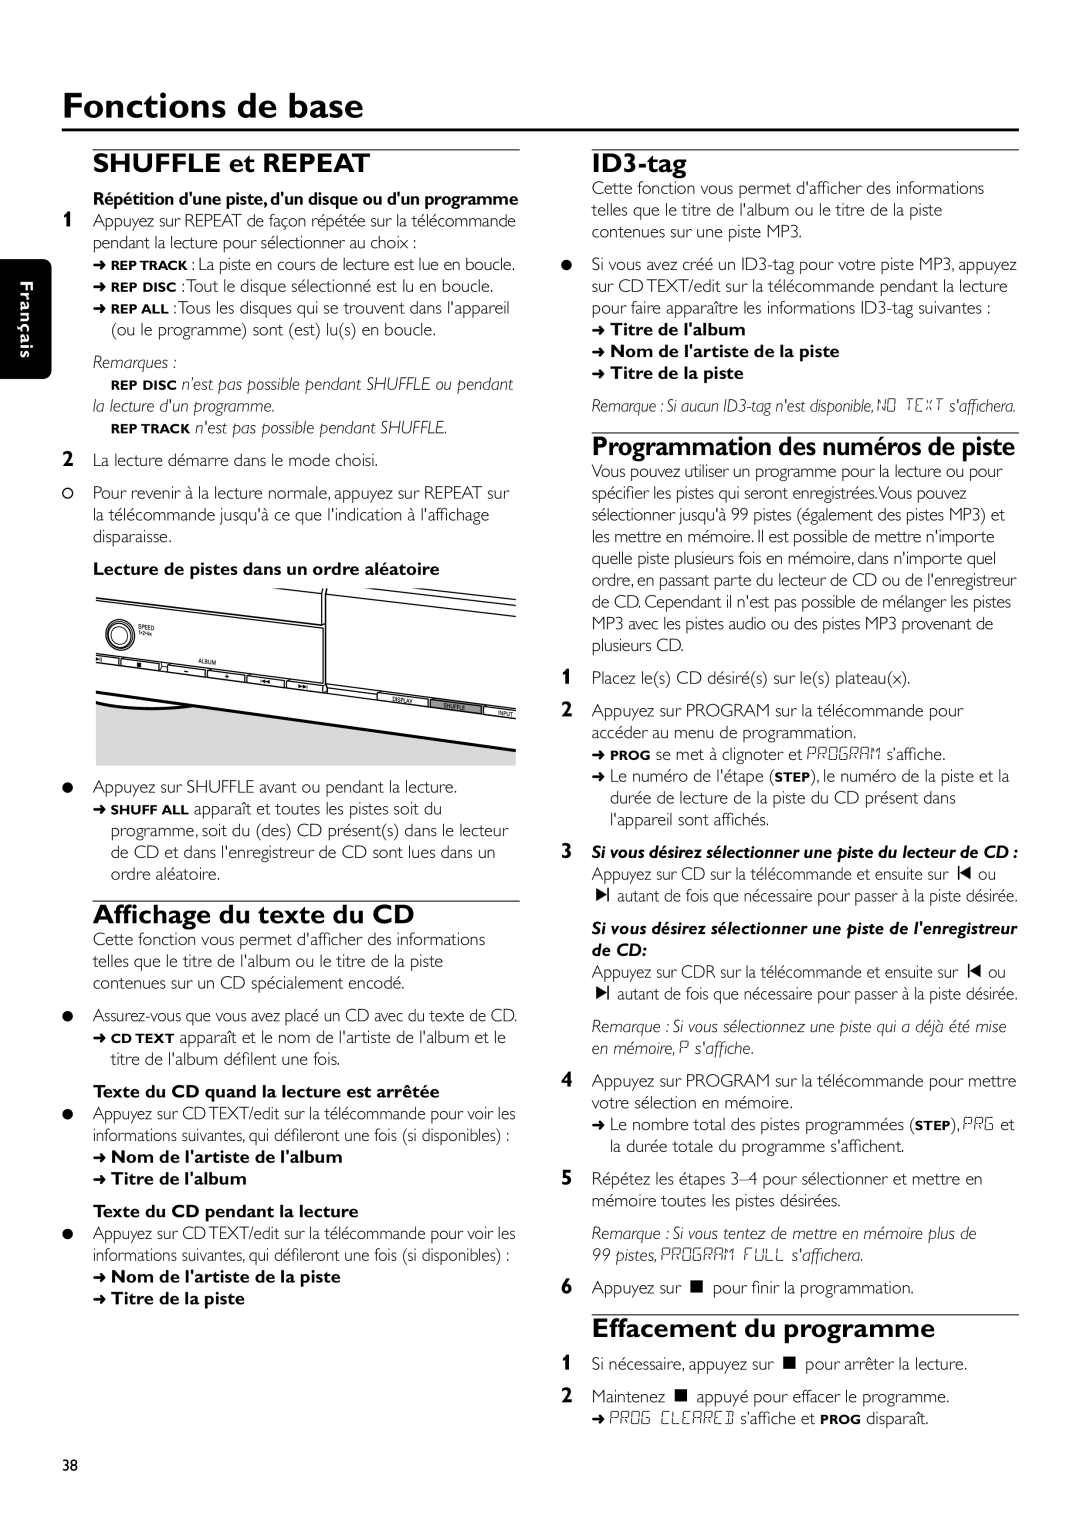 Philips CDR-795 manual SHUFFLE et REPEAT, Afﬁchage du texte du CD, Fonctions de base, Français, Remarques 